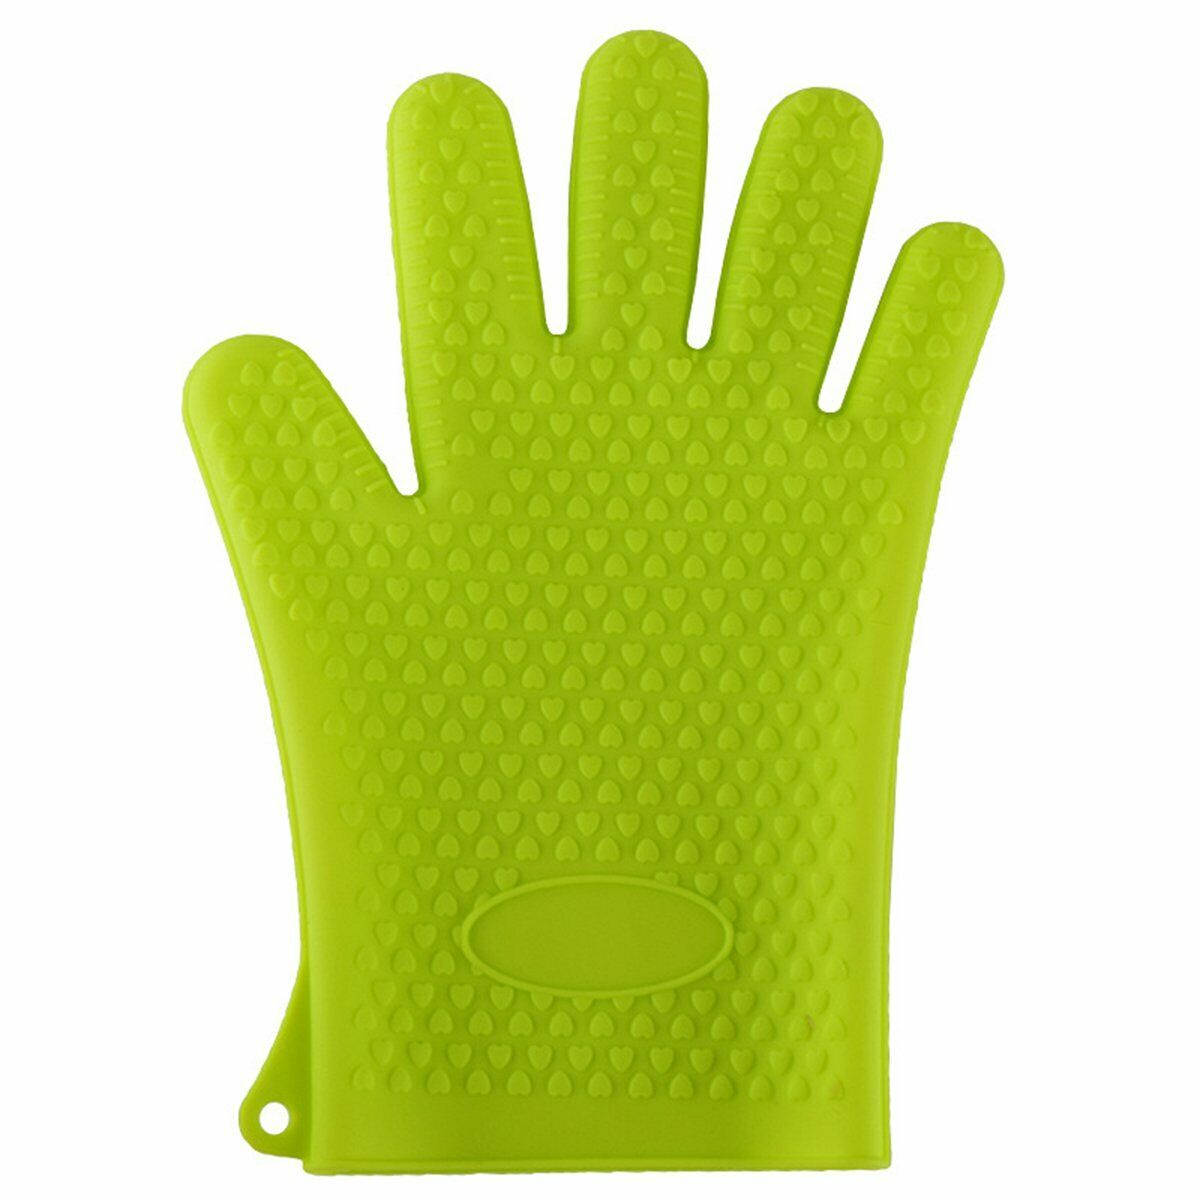 Siliconen Oven Handschoen Hittebestendige Dikke Koken Bakken Bbq Grill Handschoen Ovenwanten Diy Keuken Gadgets Keuken Accessoires: green